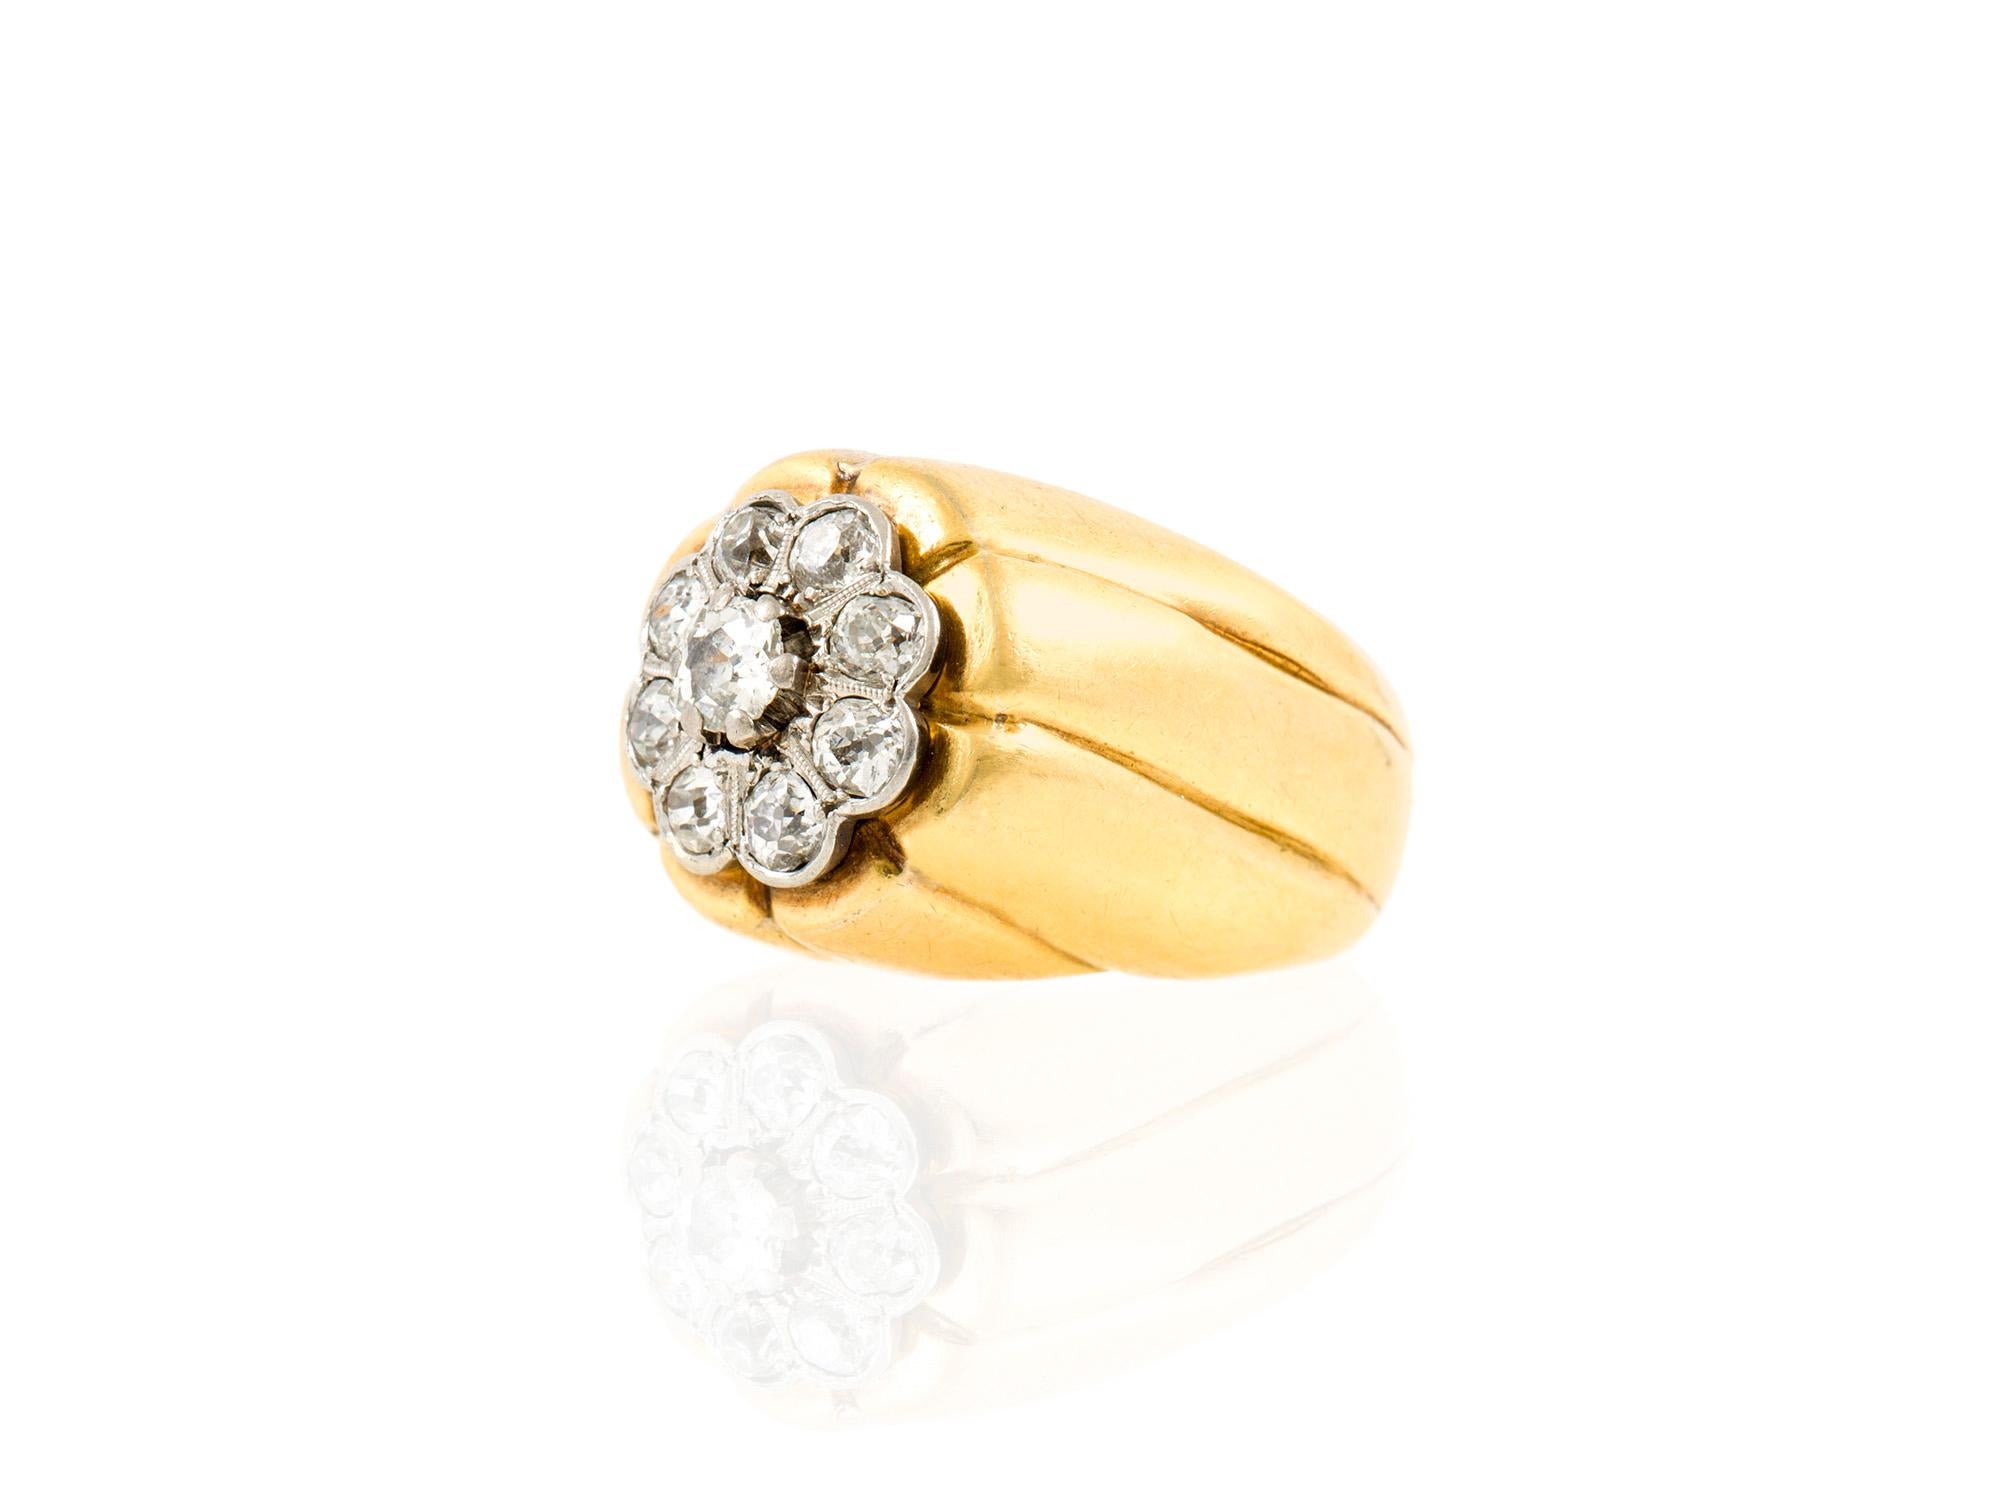 Der Ring ist aus 17 Karat Gelbgold gefertigt und mit Platin besetzt.
Mit Diamanten mit einem Gesamtgewicht von 1,00 Karat.
